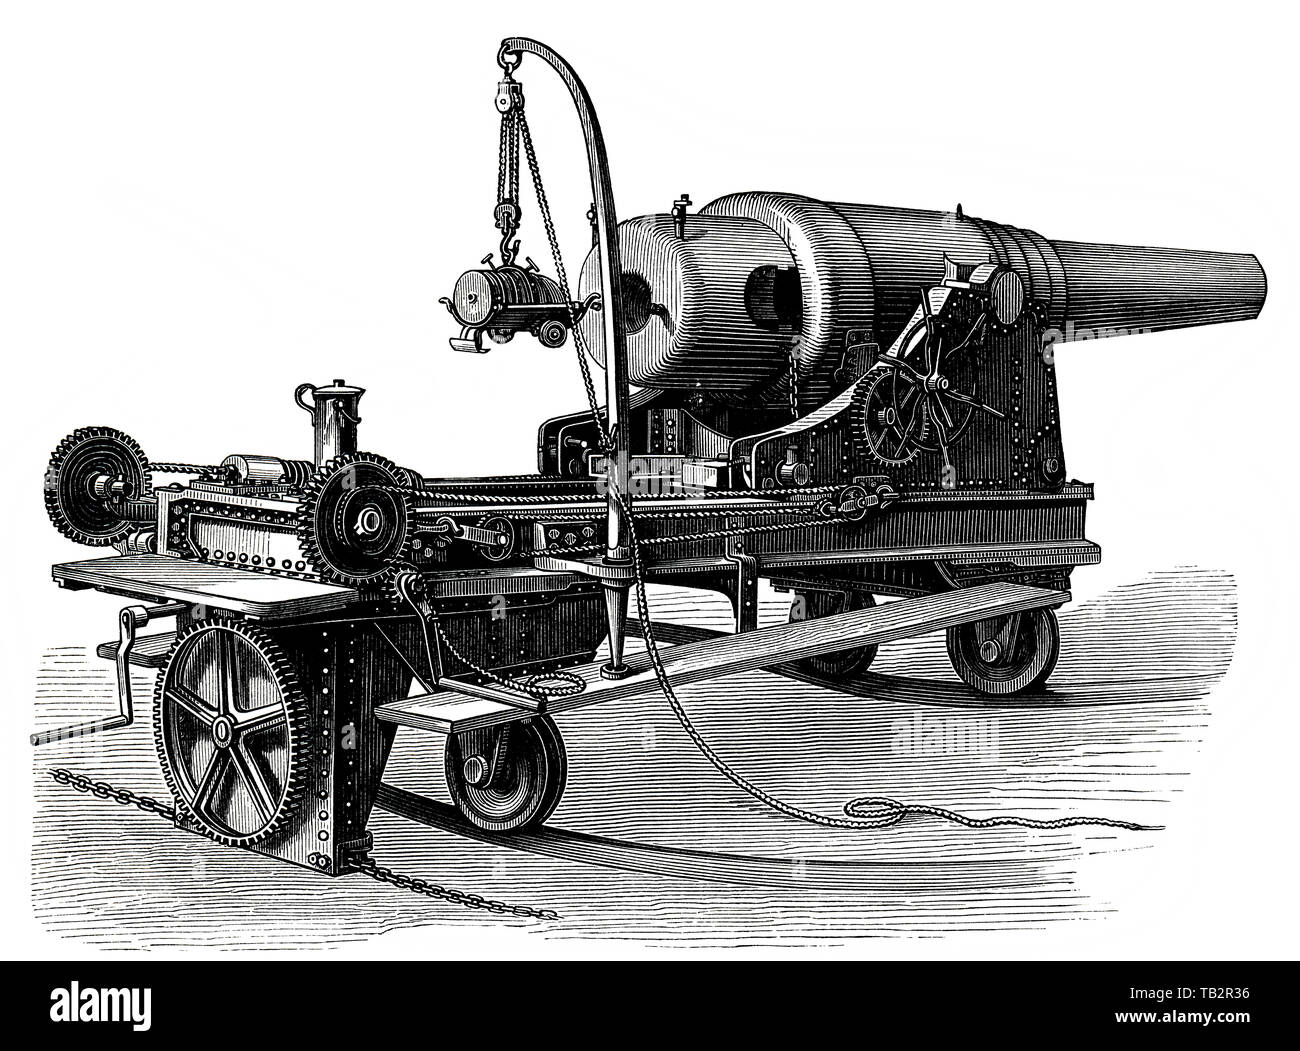 ring-mounted turret cannon from the German coastal artillery, 19th Century, Geschütze und Kanonen, Ringkanone in Küsten-Lafette, deutsches Küstengeschütz, 19. Jahrhundert, aus Meyers Konversations-Lexikon, 1889 Stock Photo